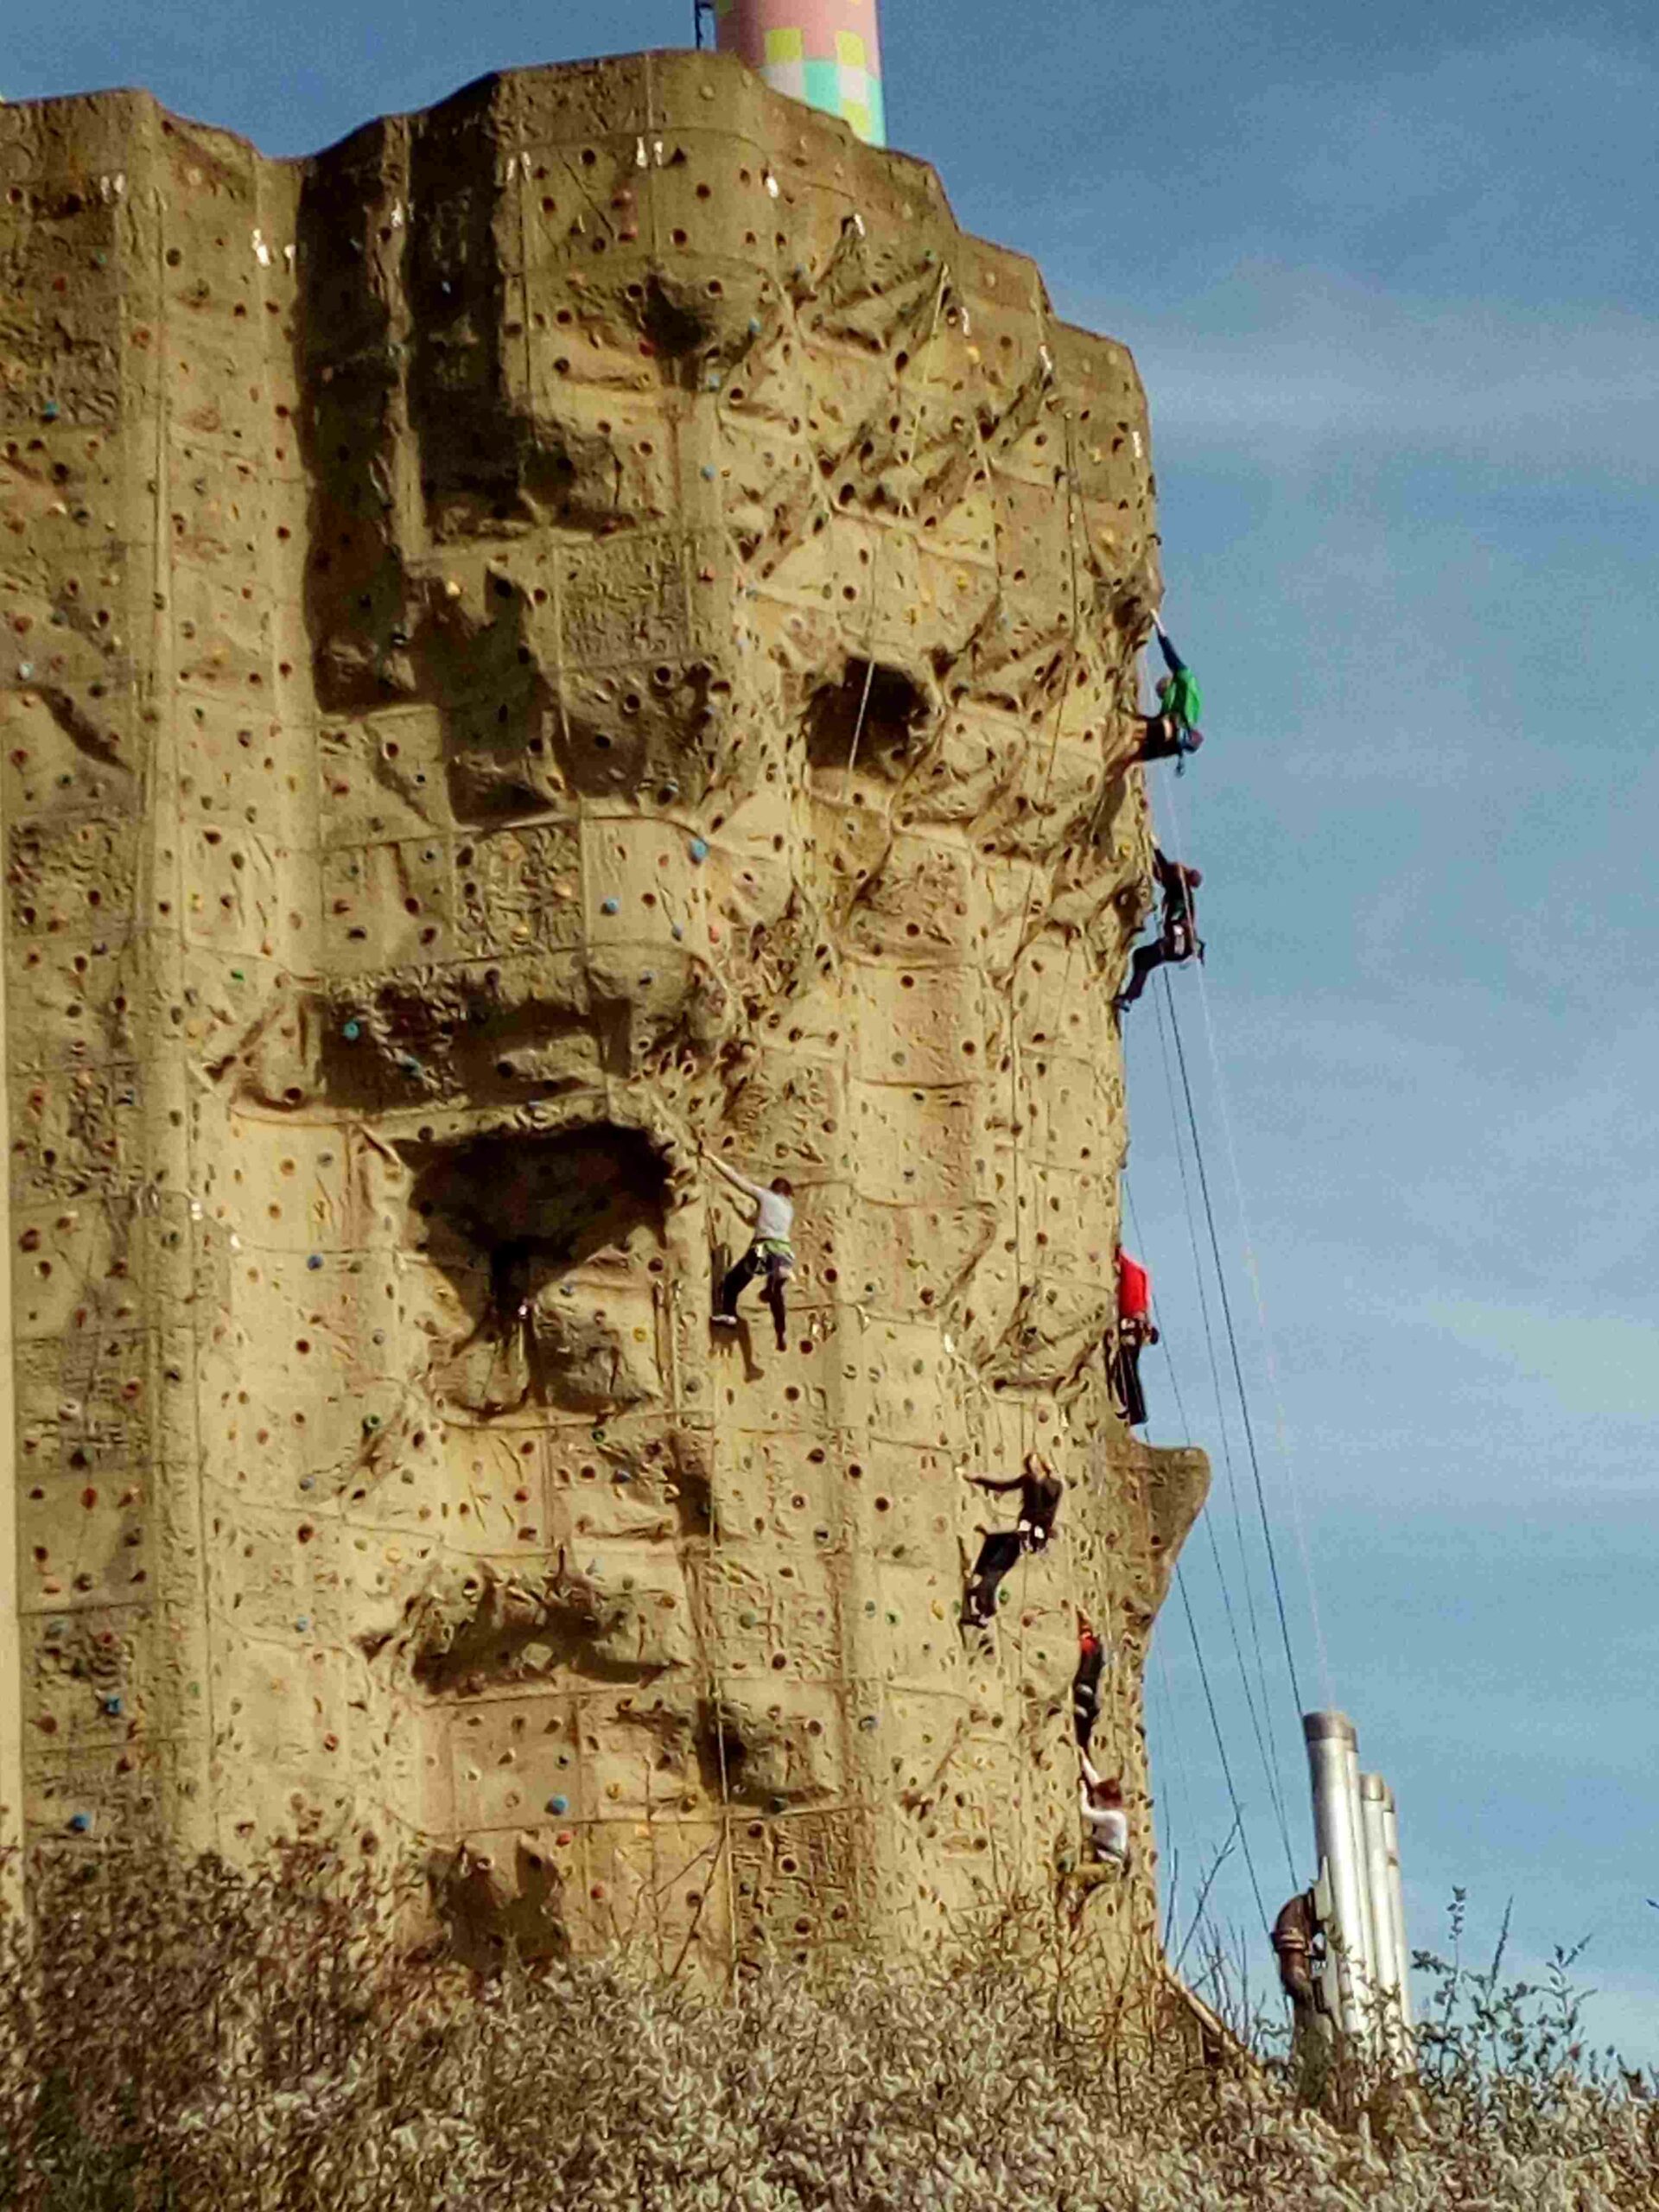 Kletterwand aus der Ferne, eine kletternde Person ist zu erkennen